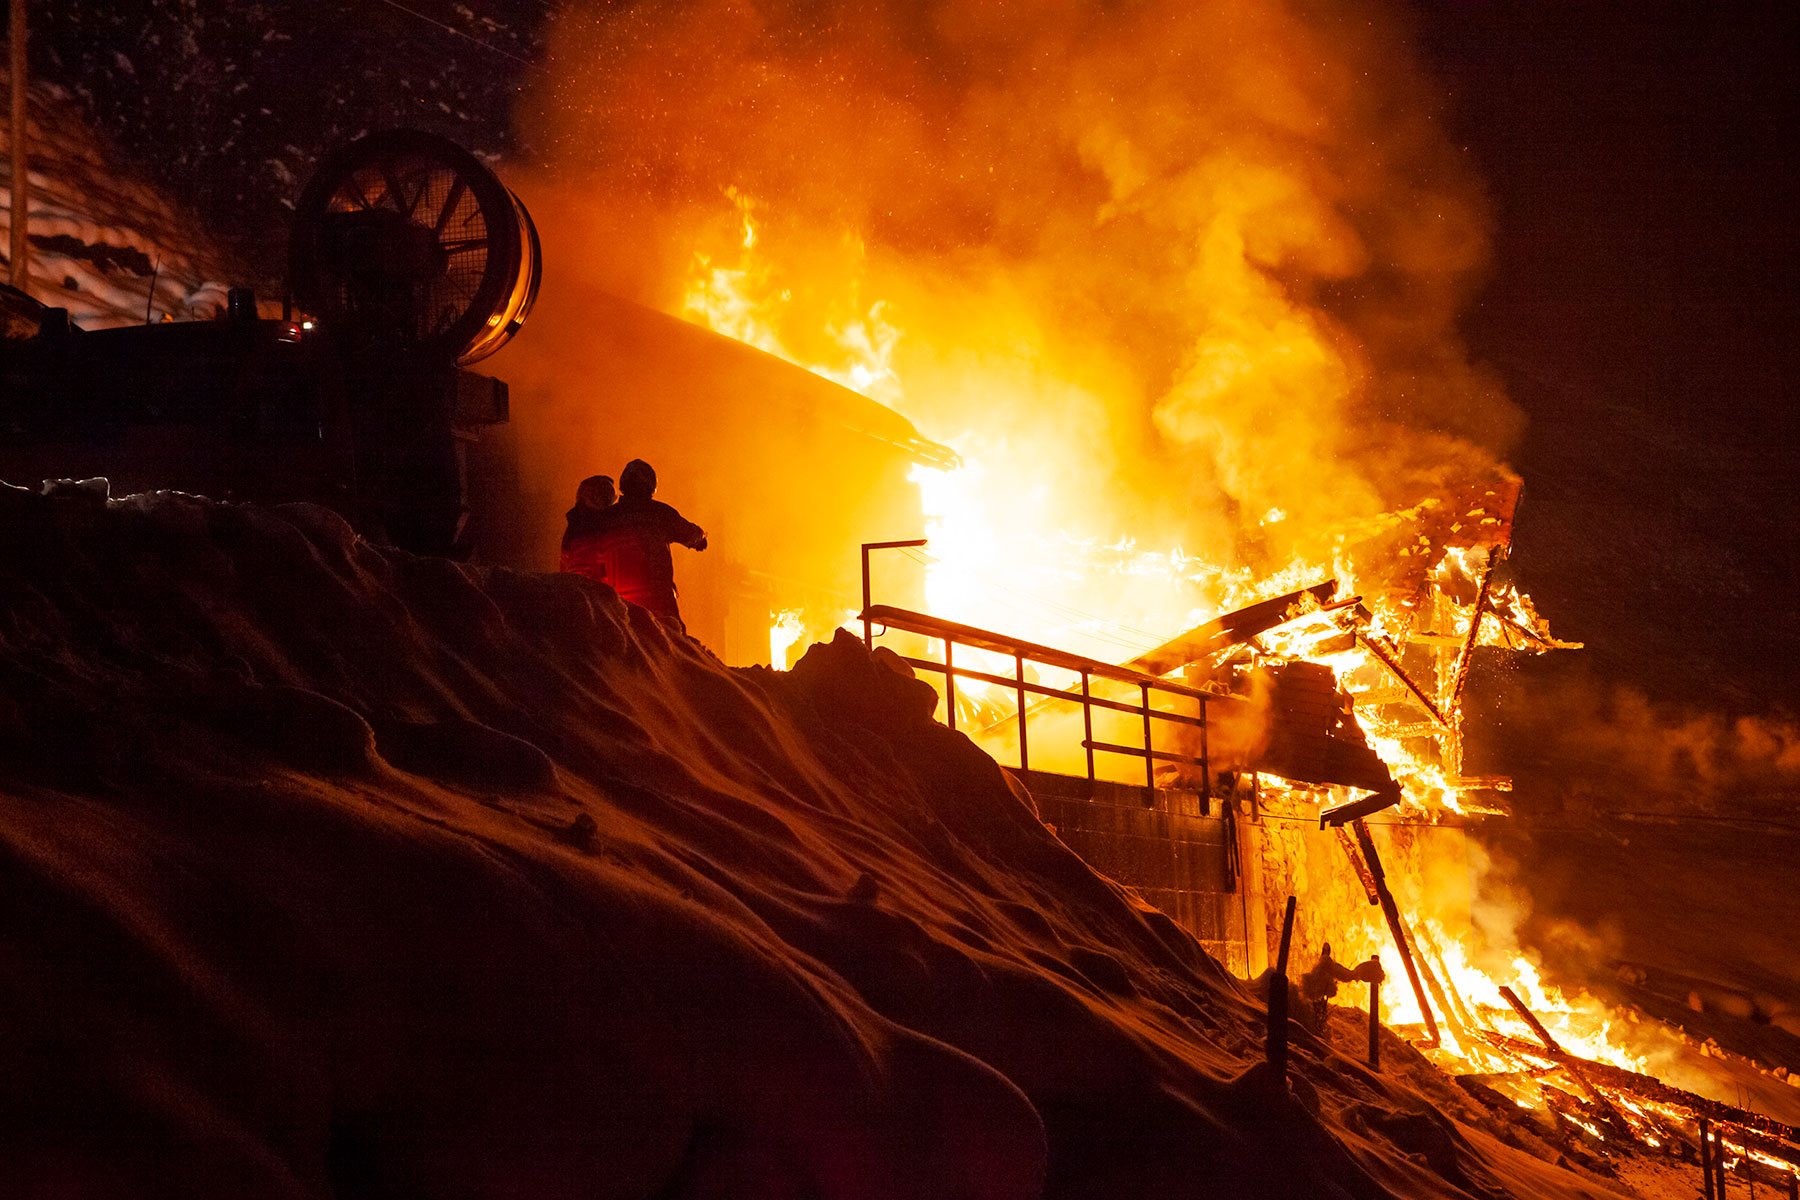 Oberhalb von Büren brennt ein Wohnhaus nieder. Die Feuerwehren Oberdorf, Dallenwil, Wolfenschiessen und Stans können ein Übergreifen des Brandes auf den Stall verhindern.